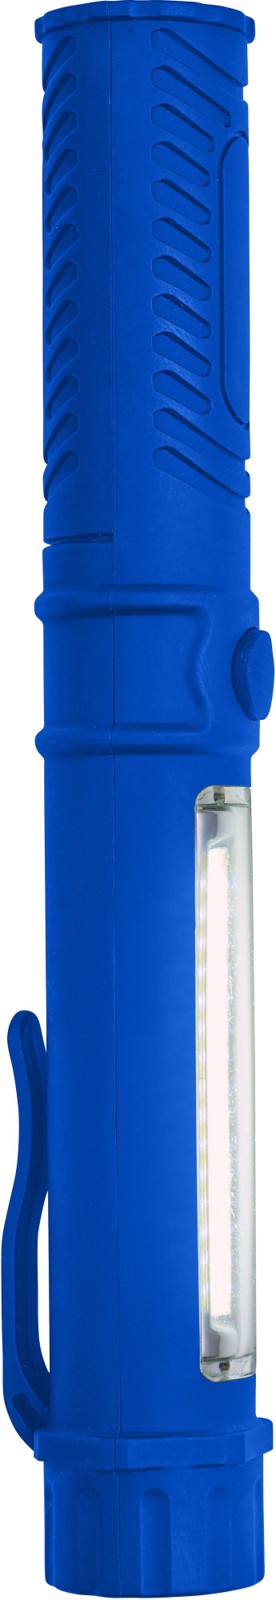 ABS work light/torch - Cobalt Blue